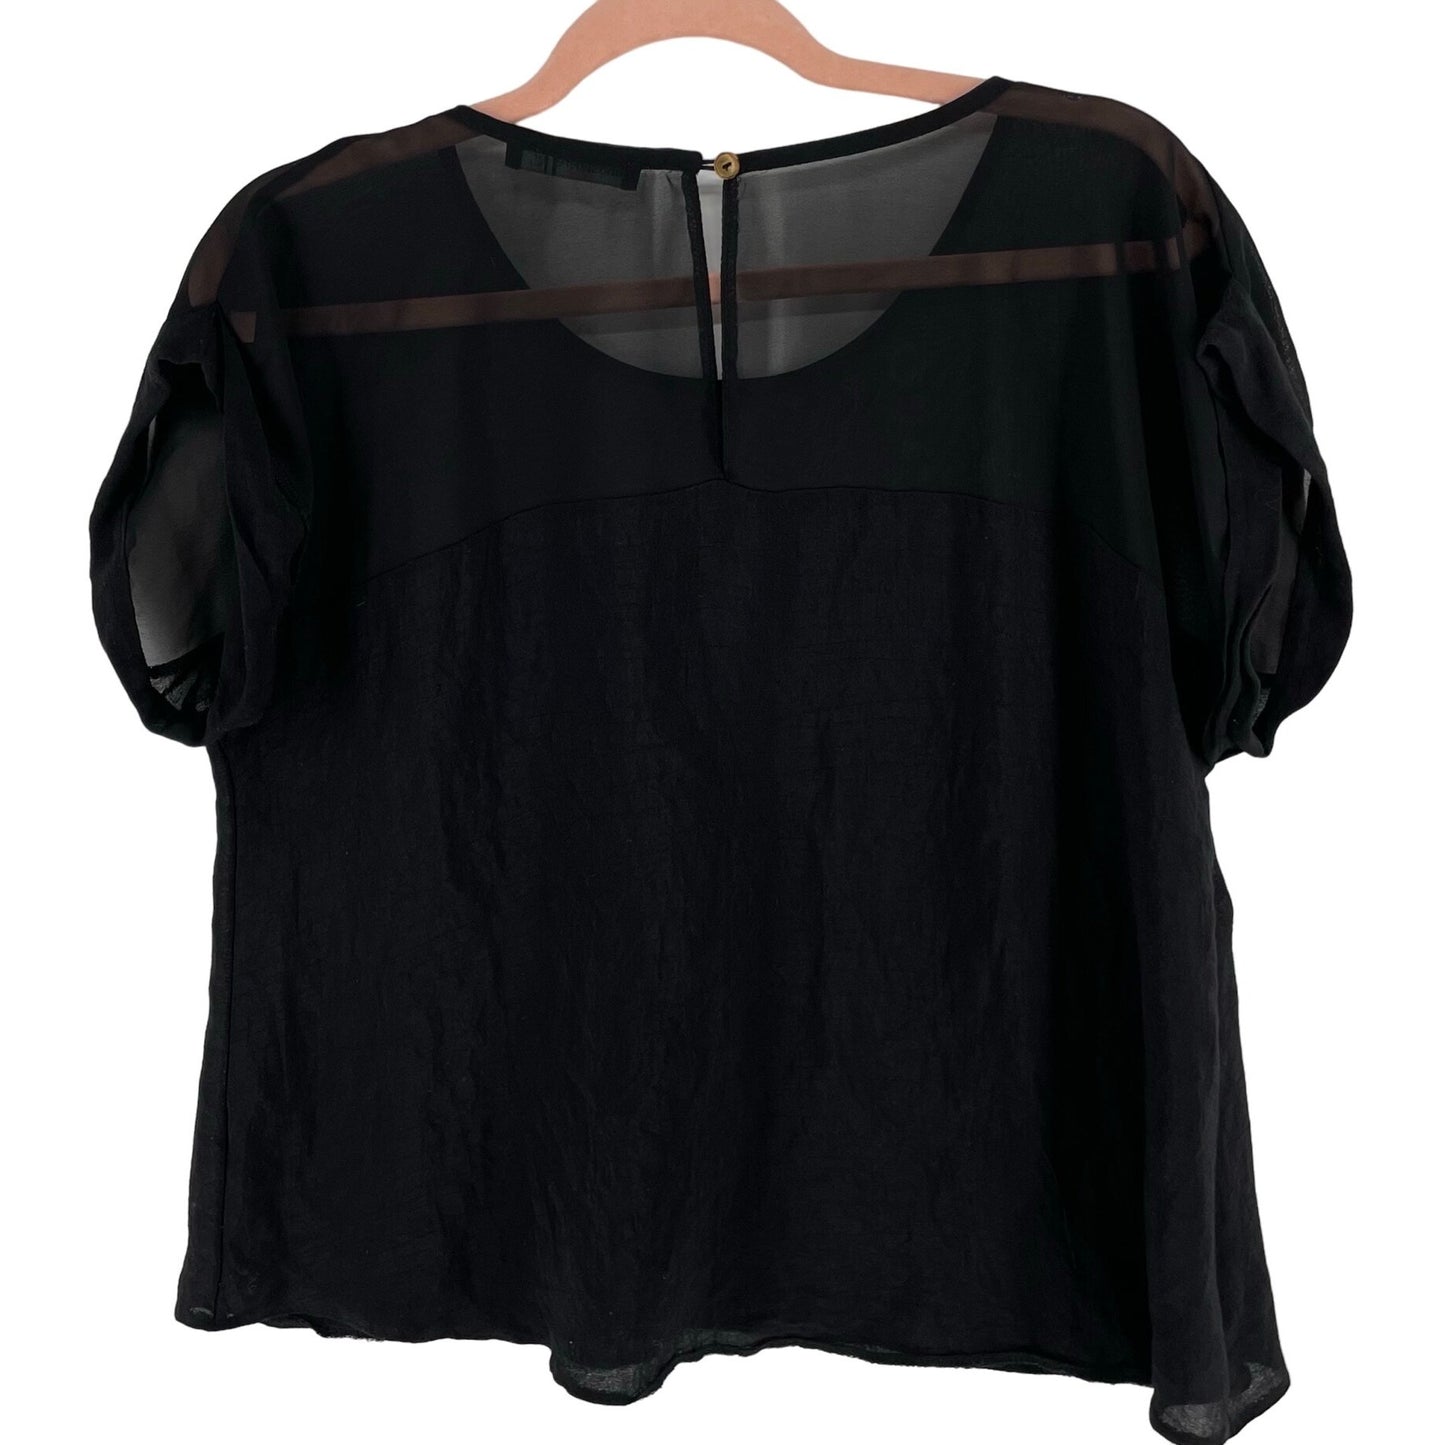 Atmosphere Women's Size 8 Black Sheer Short-Sleeved Blouse